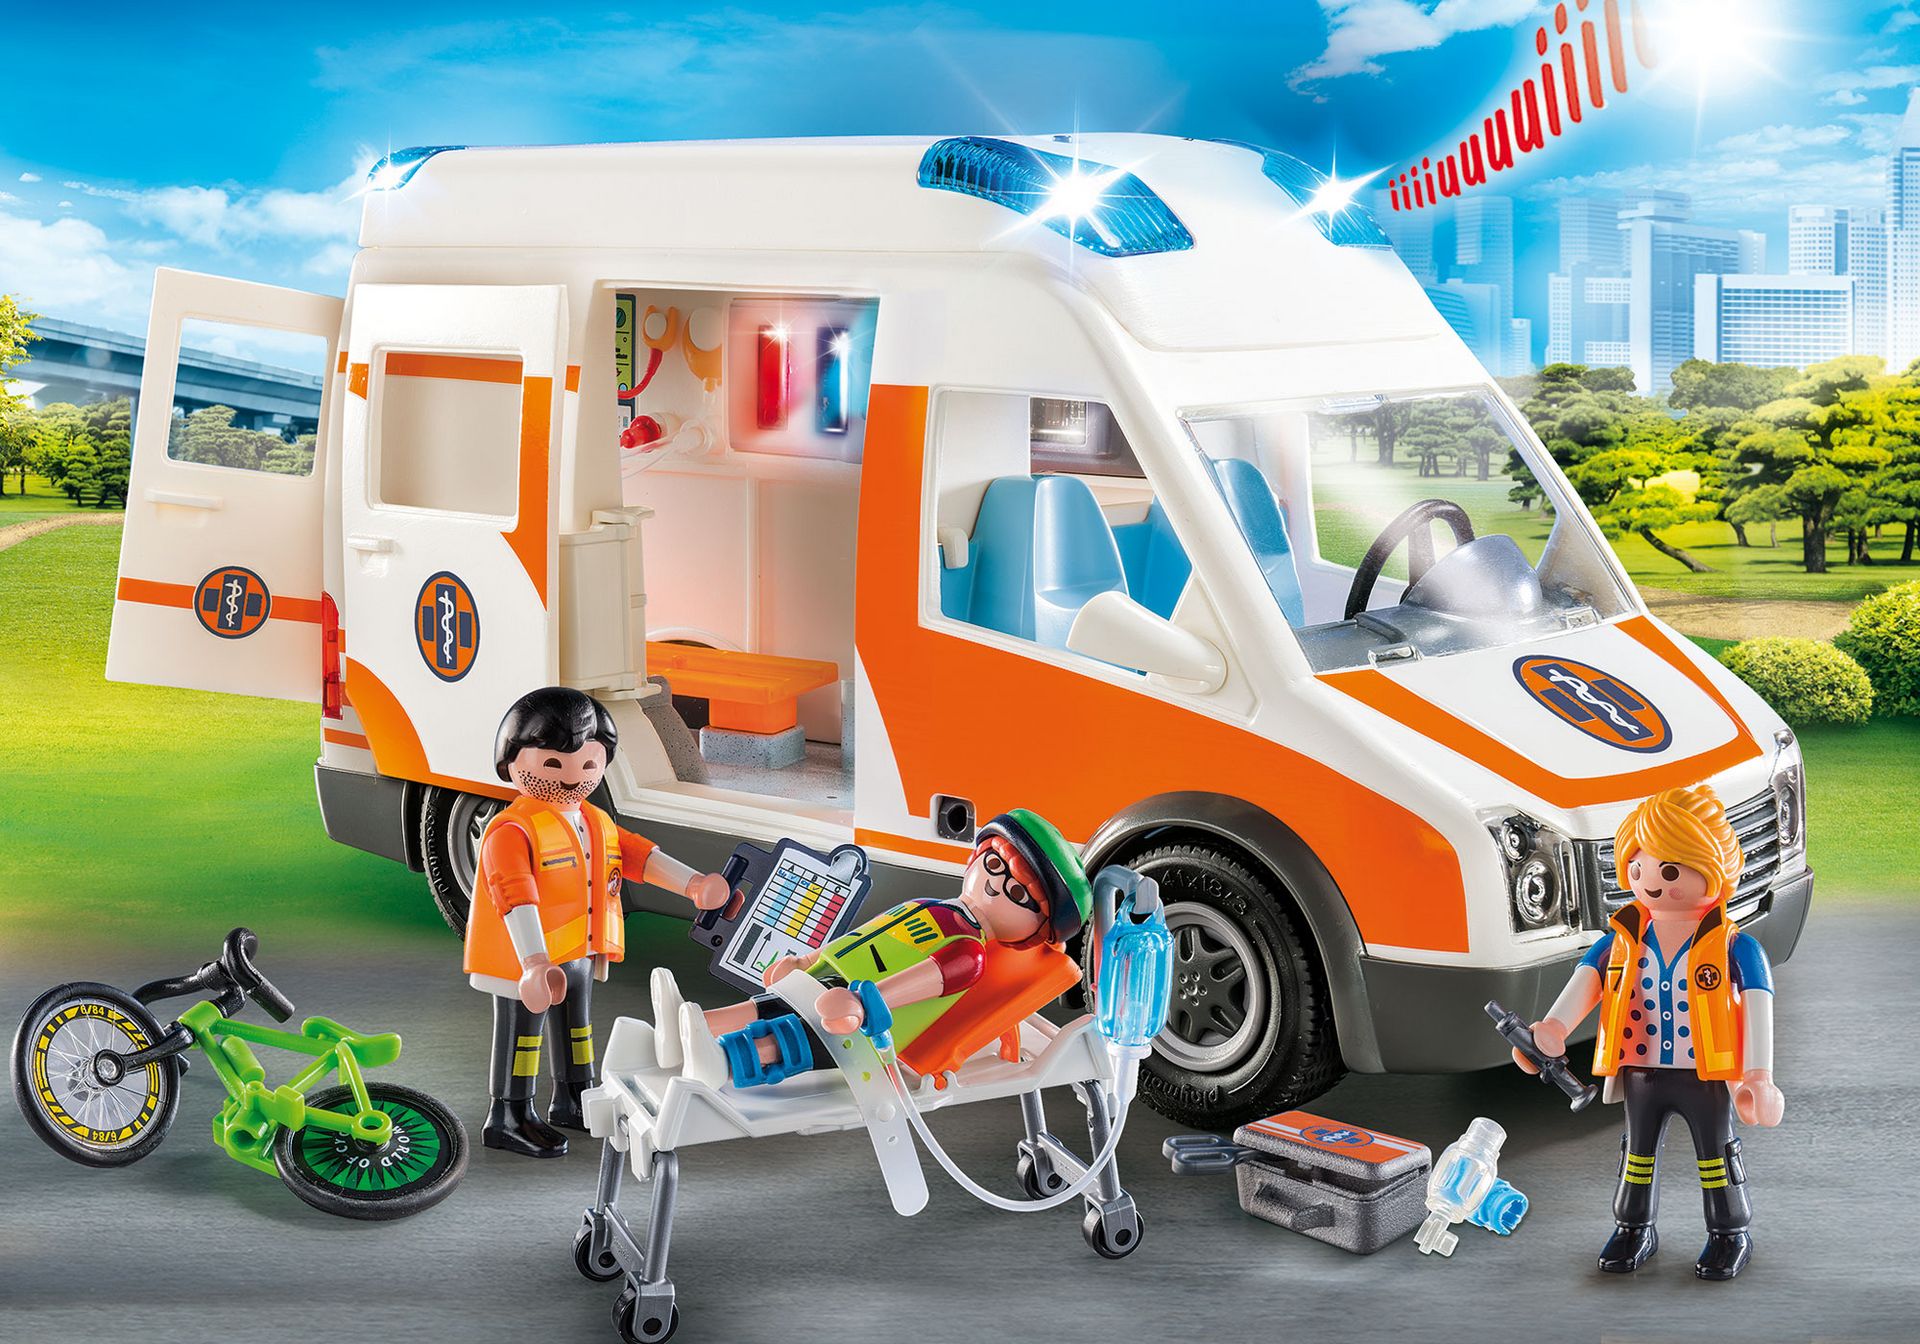 + City Life 70049 Ambulancia con Luces Talla Única Playmobil City Life: Gran Hospital Set Juguetes Multicolor A Partir De 4 Años 70190